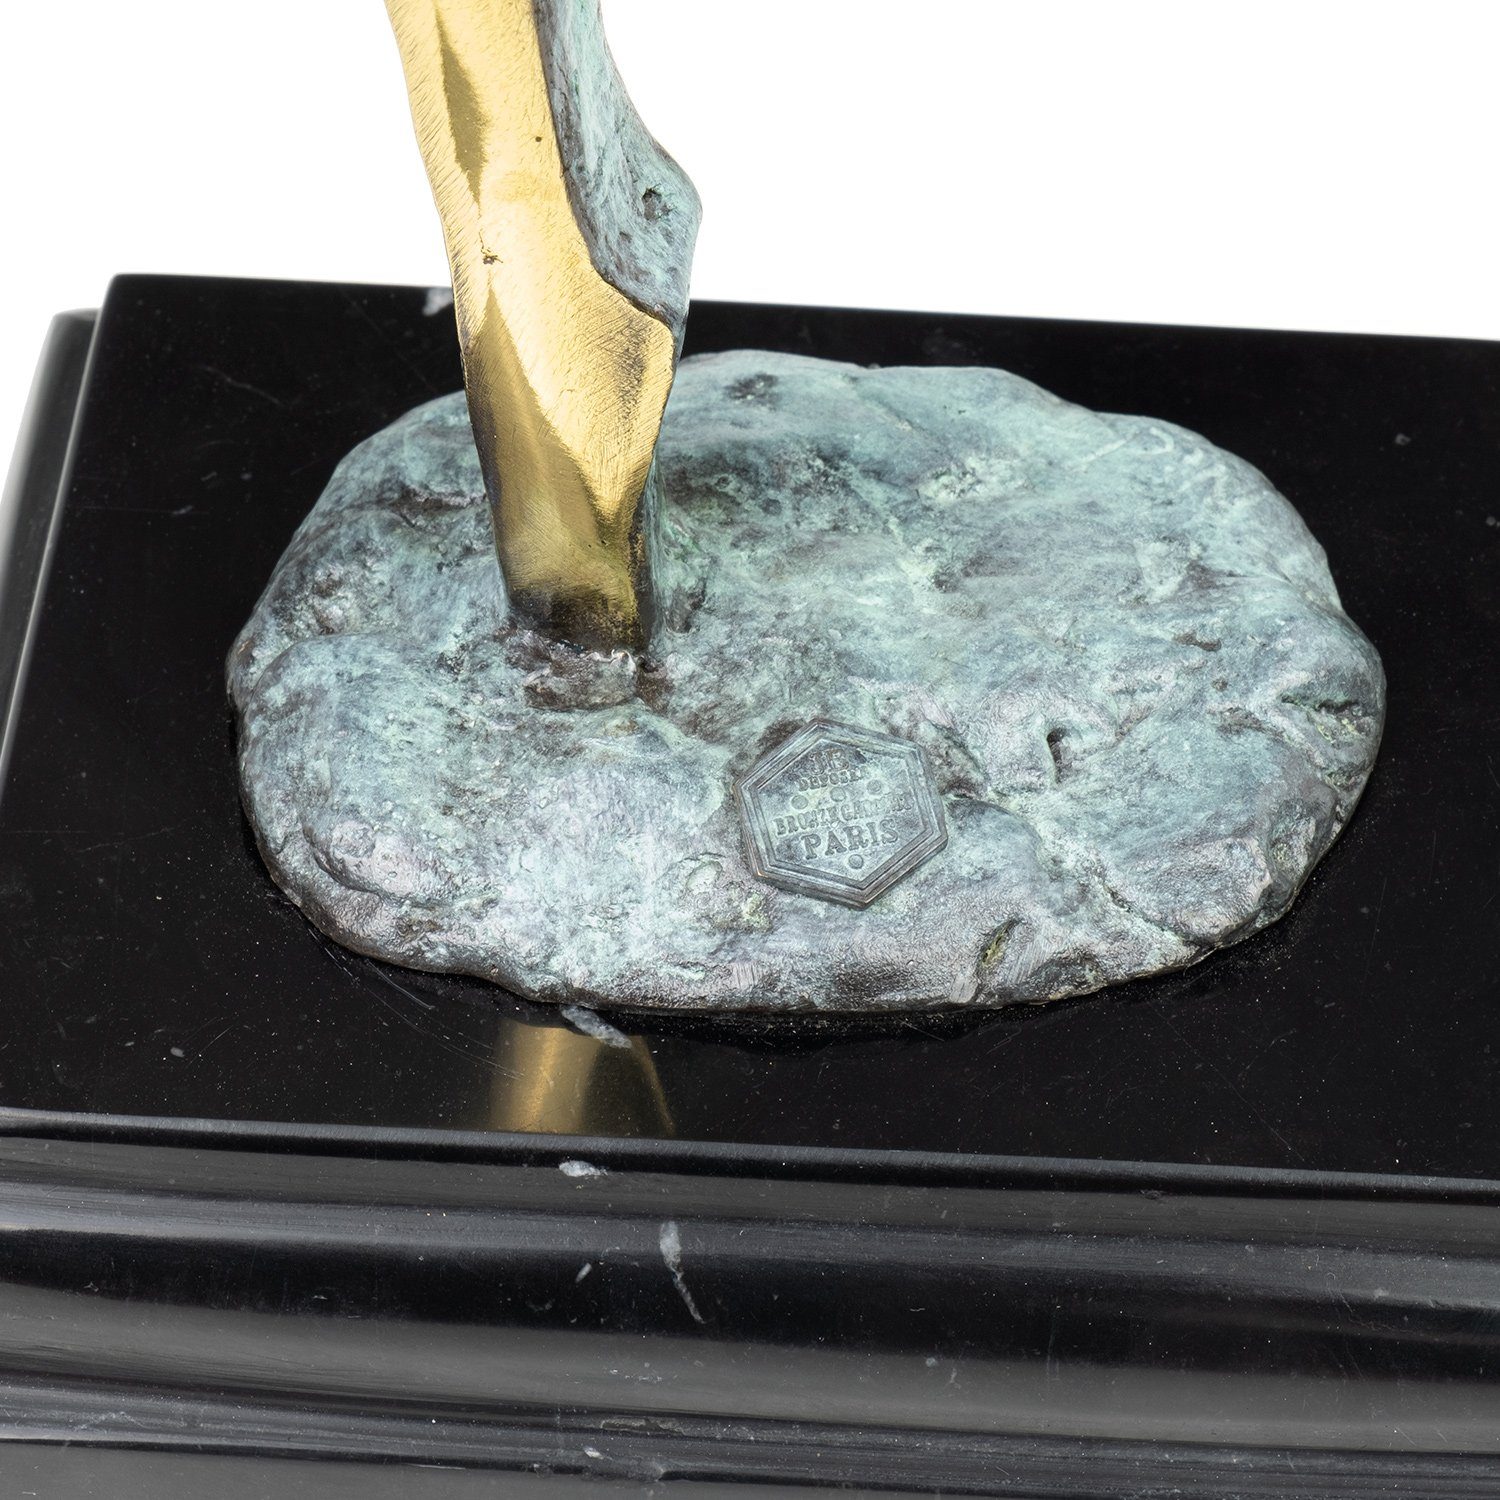 Schreibtisch Vitrine Regal für Bronzefigur Skulptur Figuren Deko Dekofigur abstrakt, Bronzefigur Weiblicher Moritz Akt